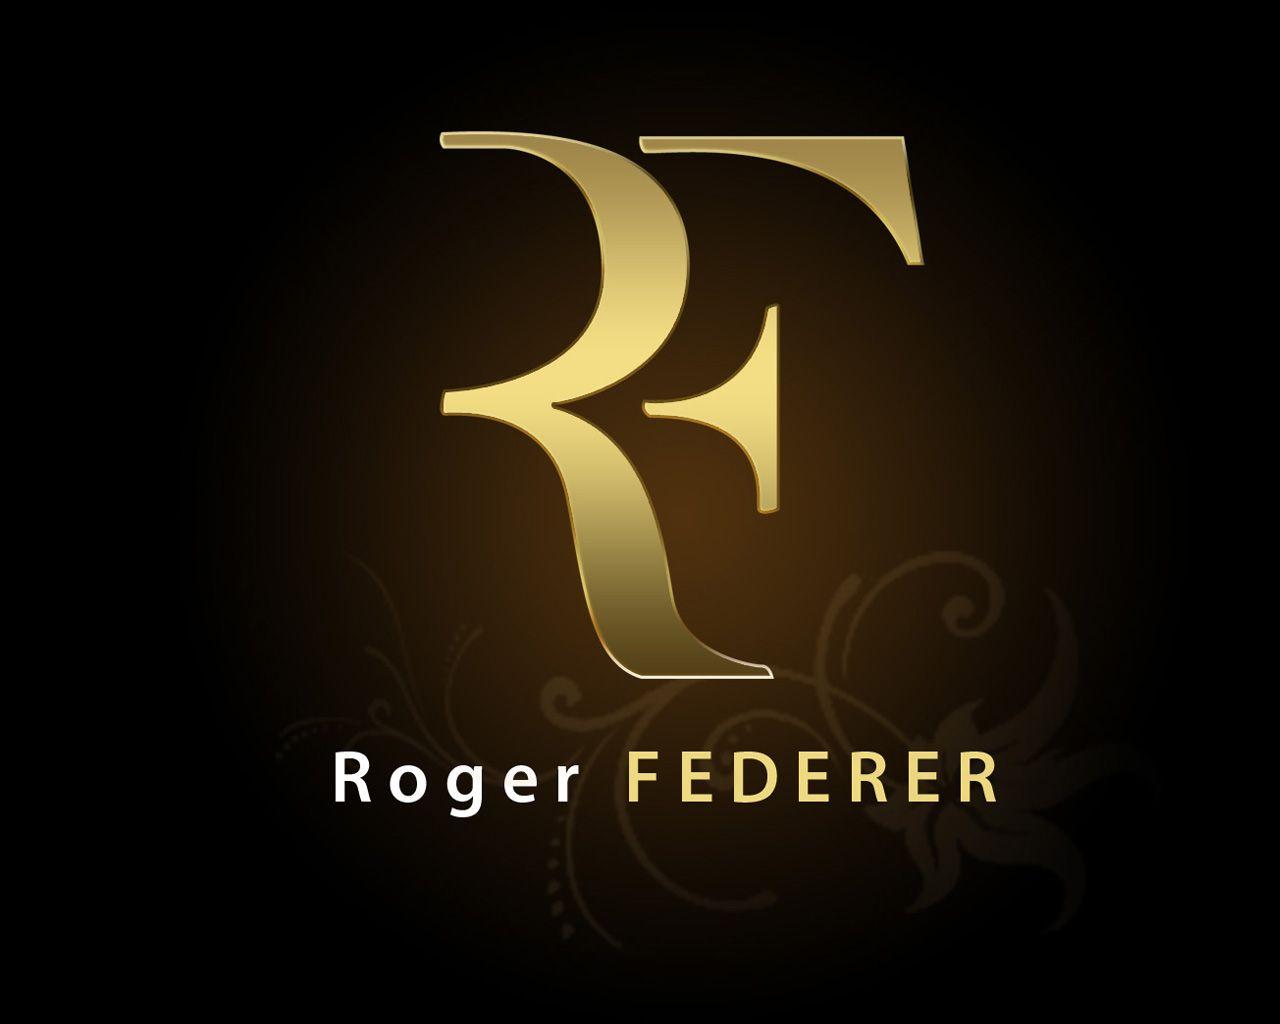 Roger federer logo -Logo Brands For Free HD 3D